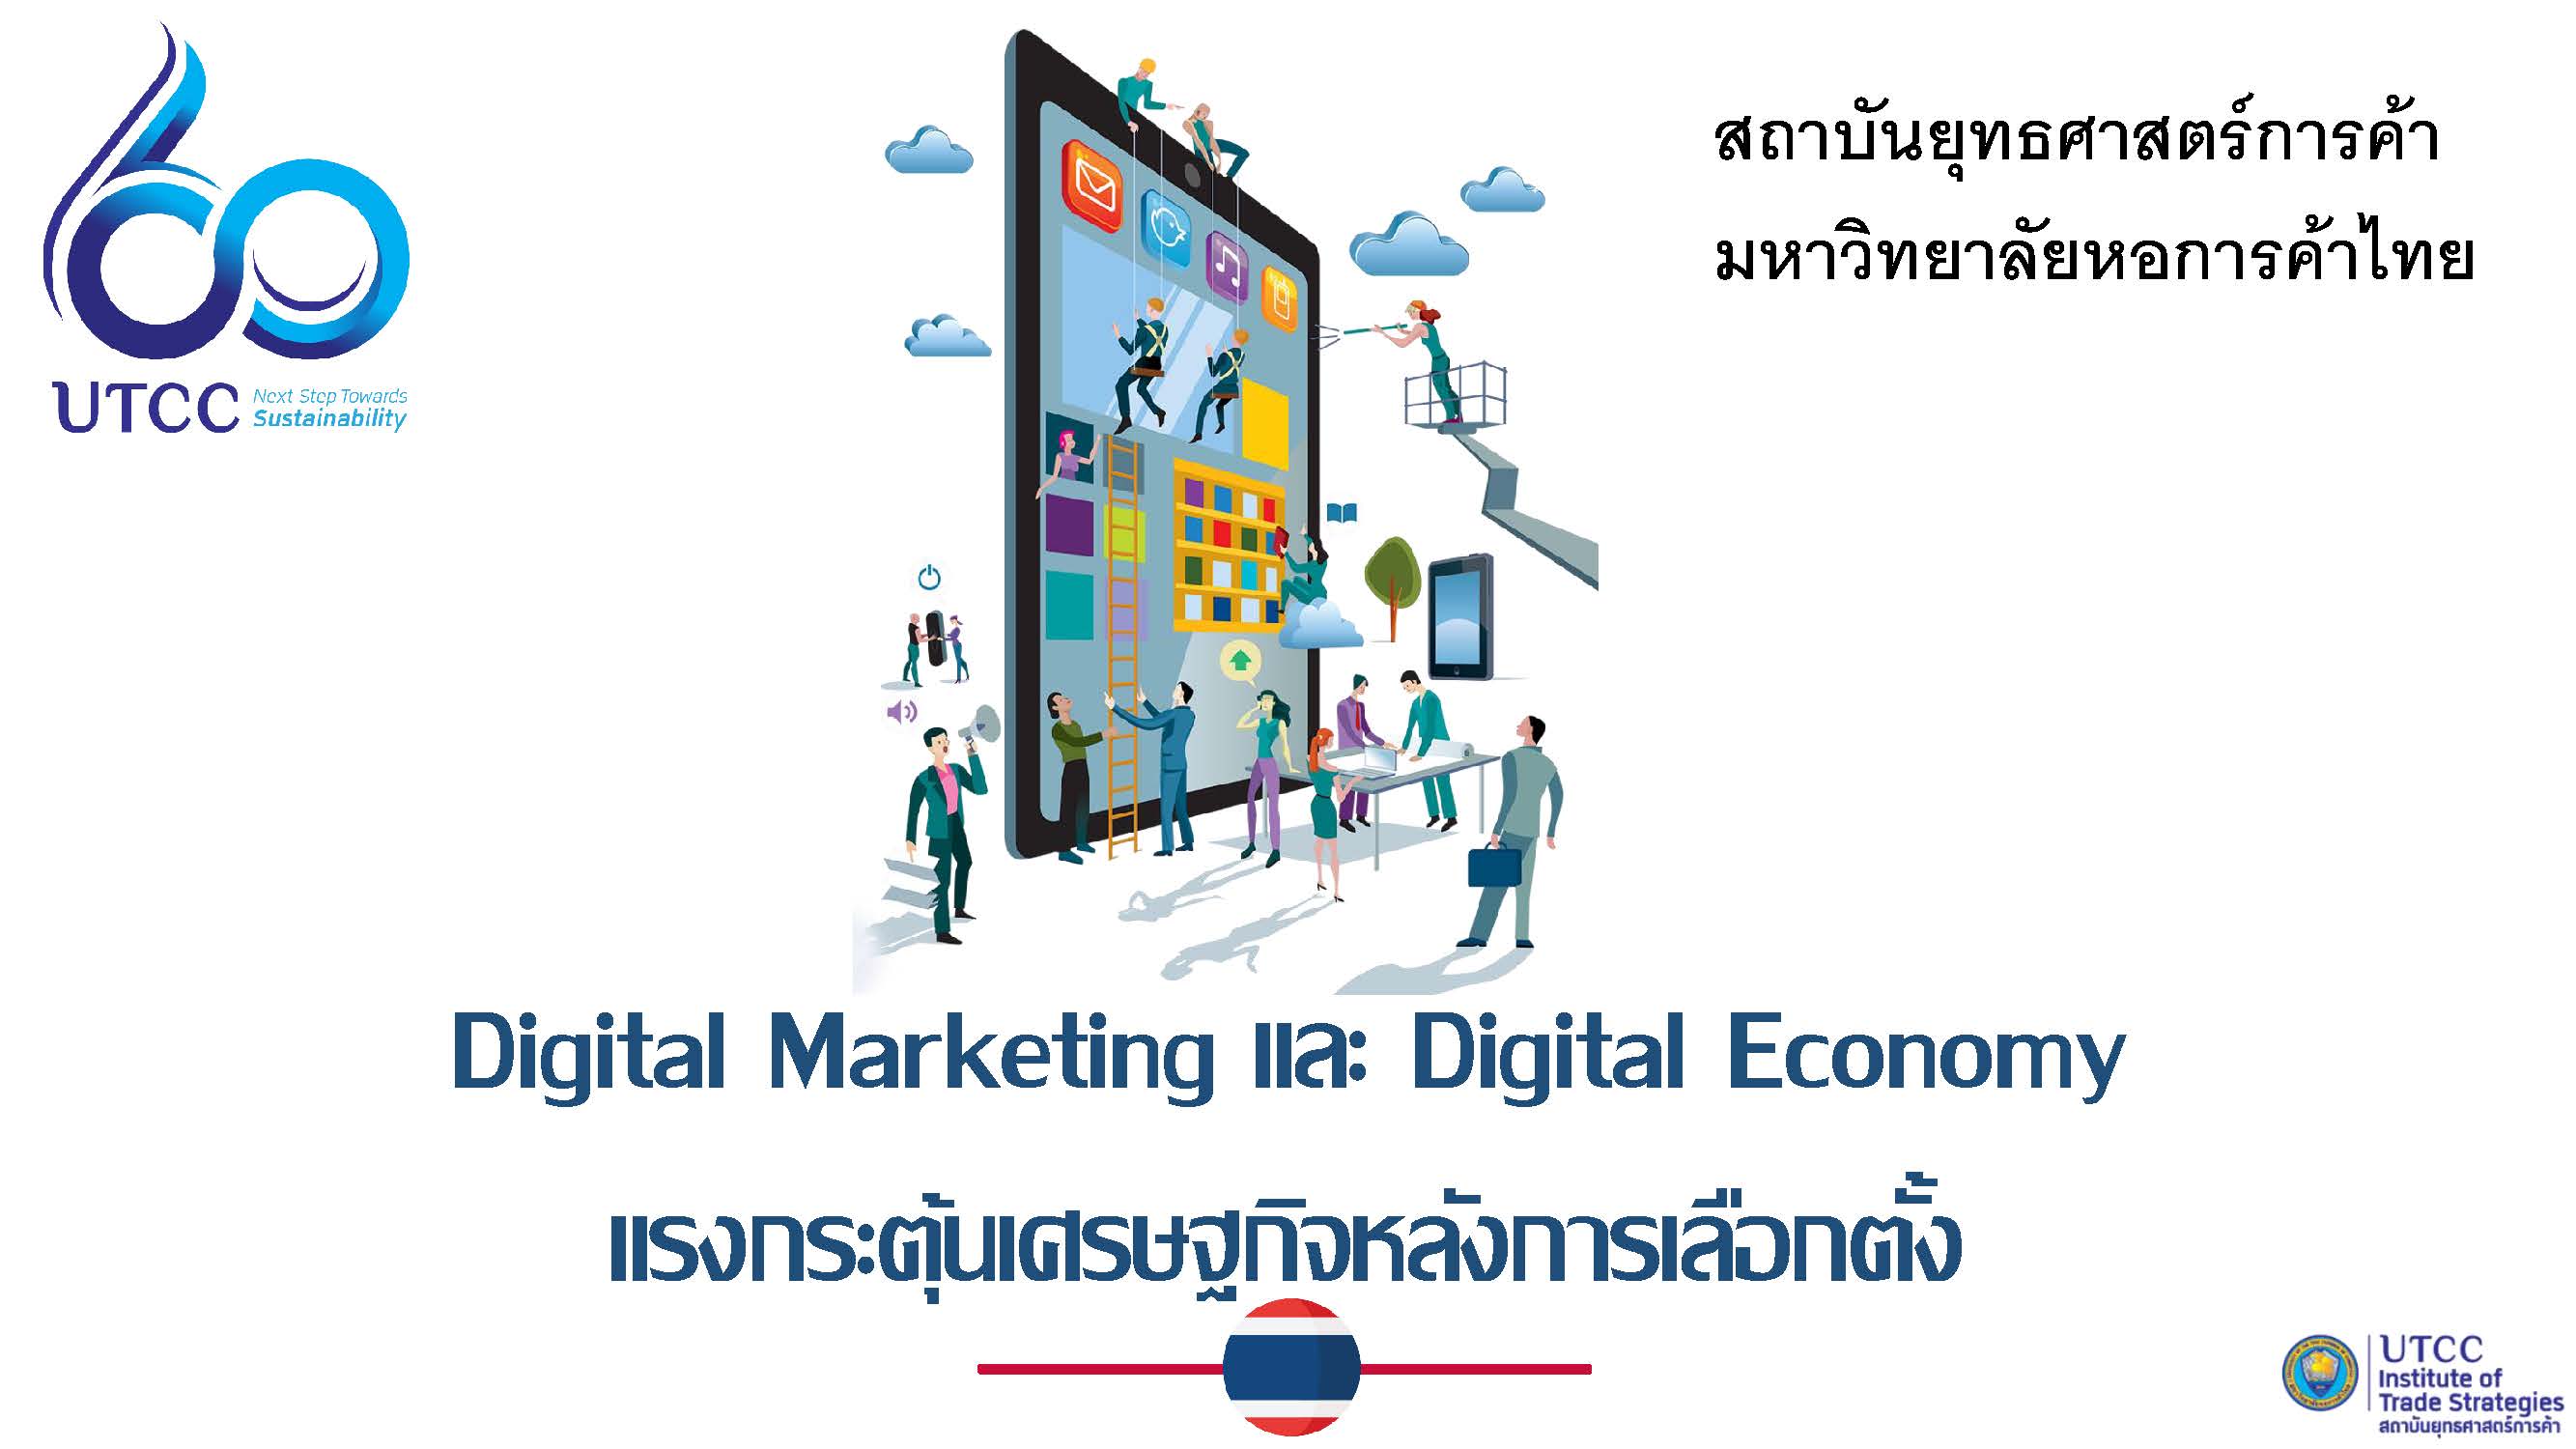 Digital Marketing และ Digital Economy แรงกระตุ้นเศรษฐกิจหลังการเลือกตั้ง (ภาคธุรกิจ)